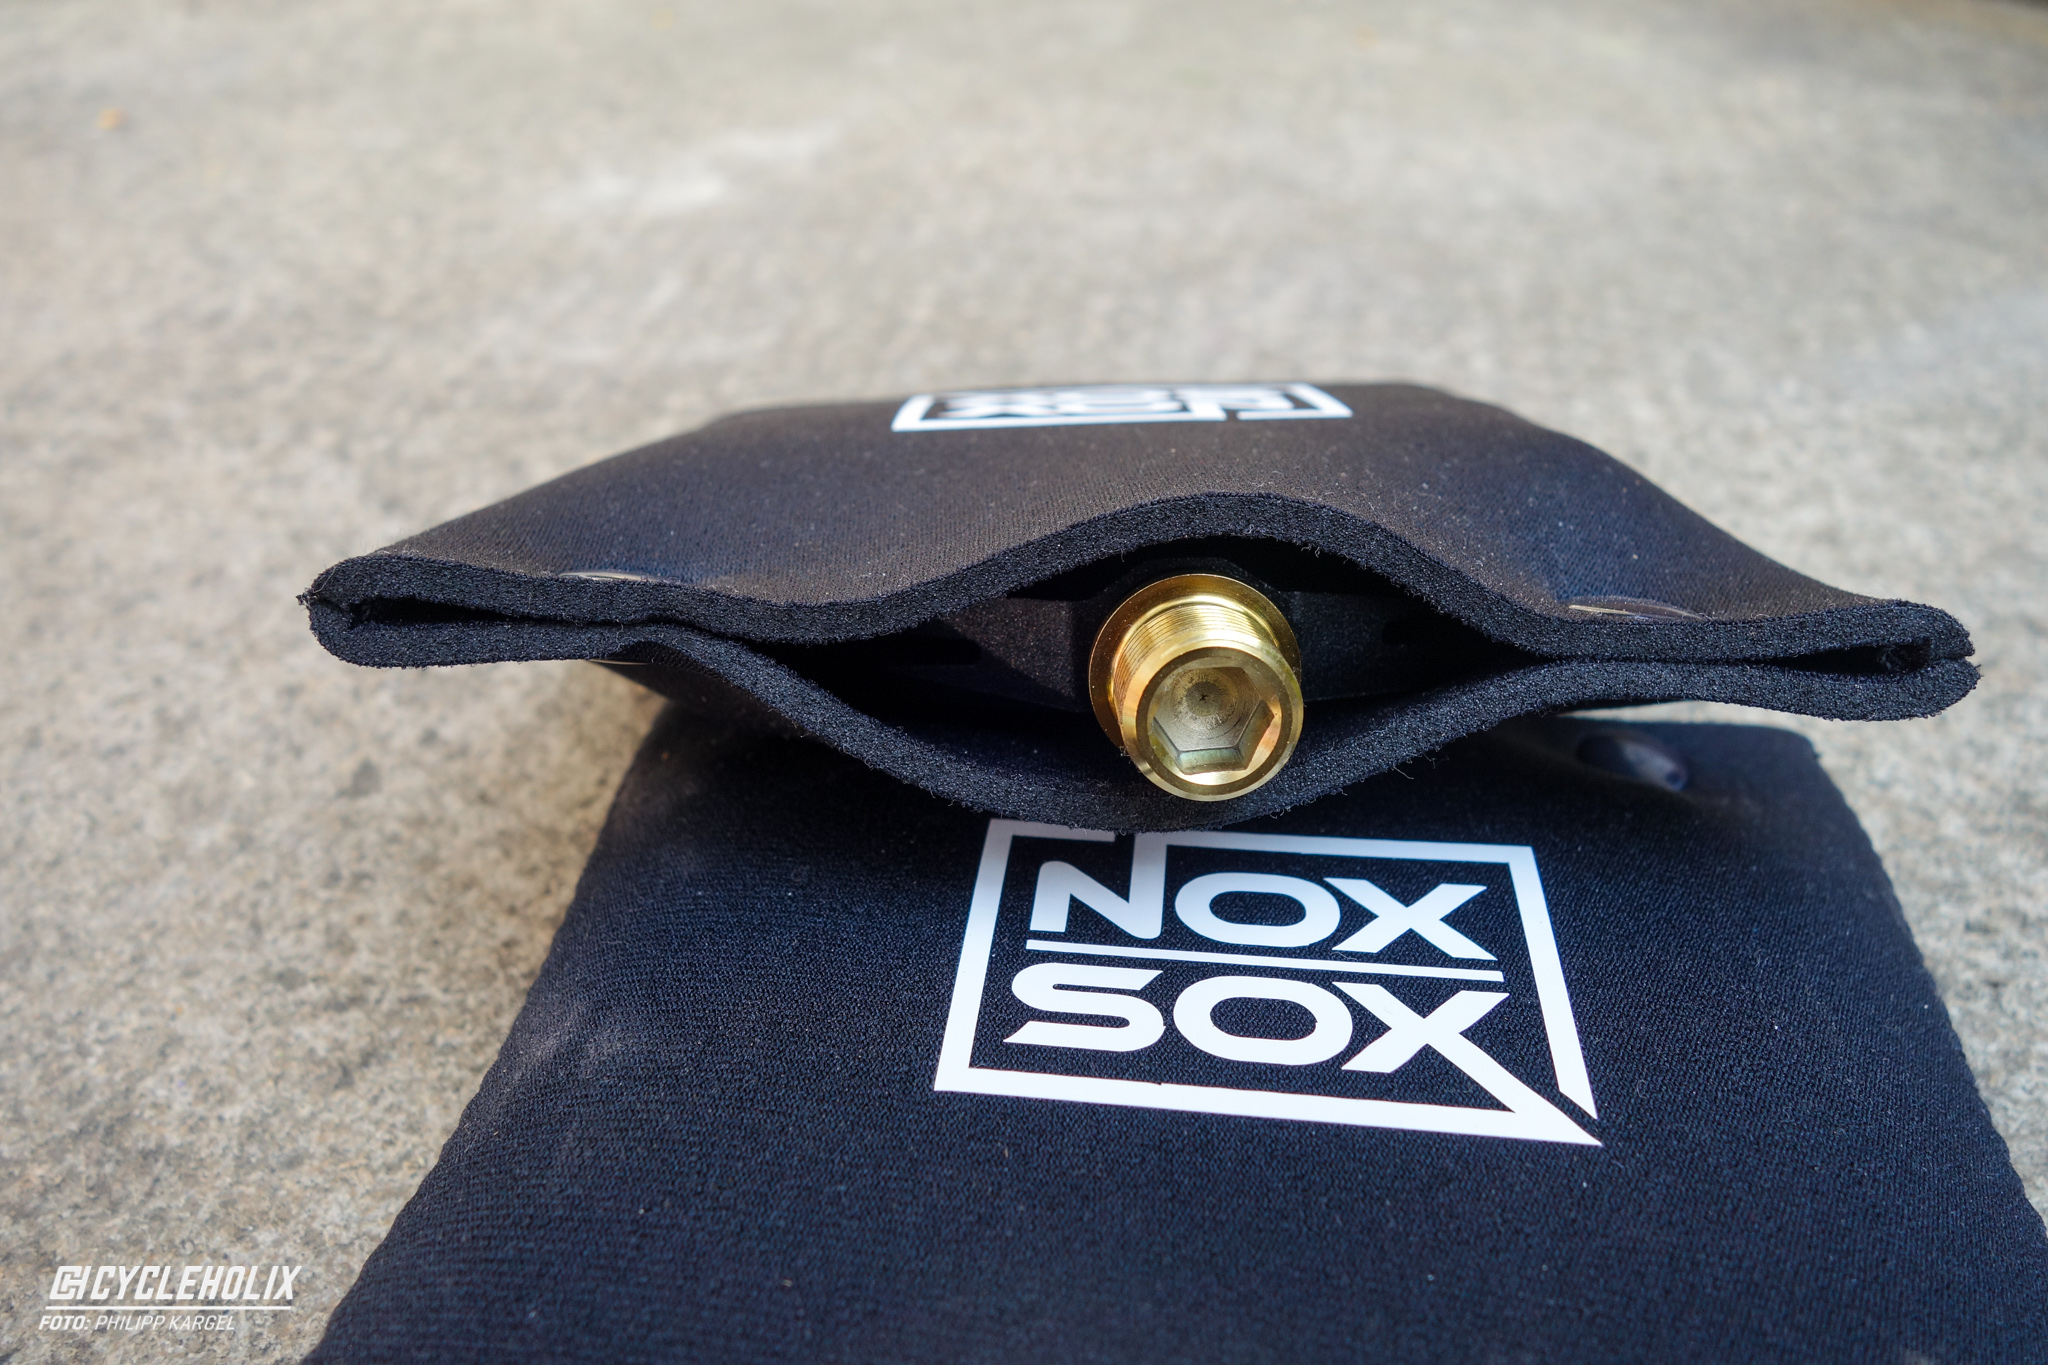 Nox Sox